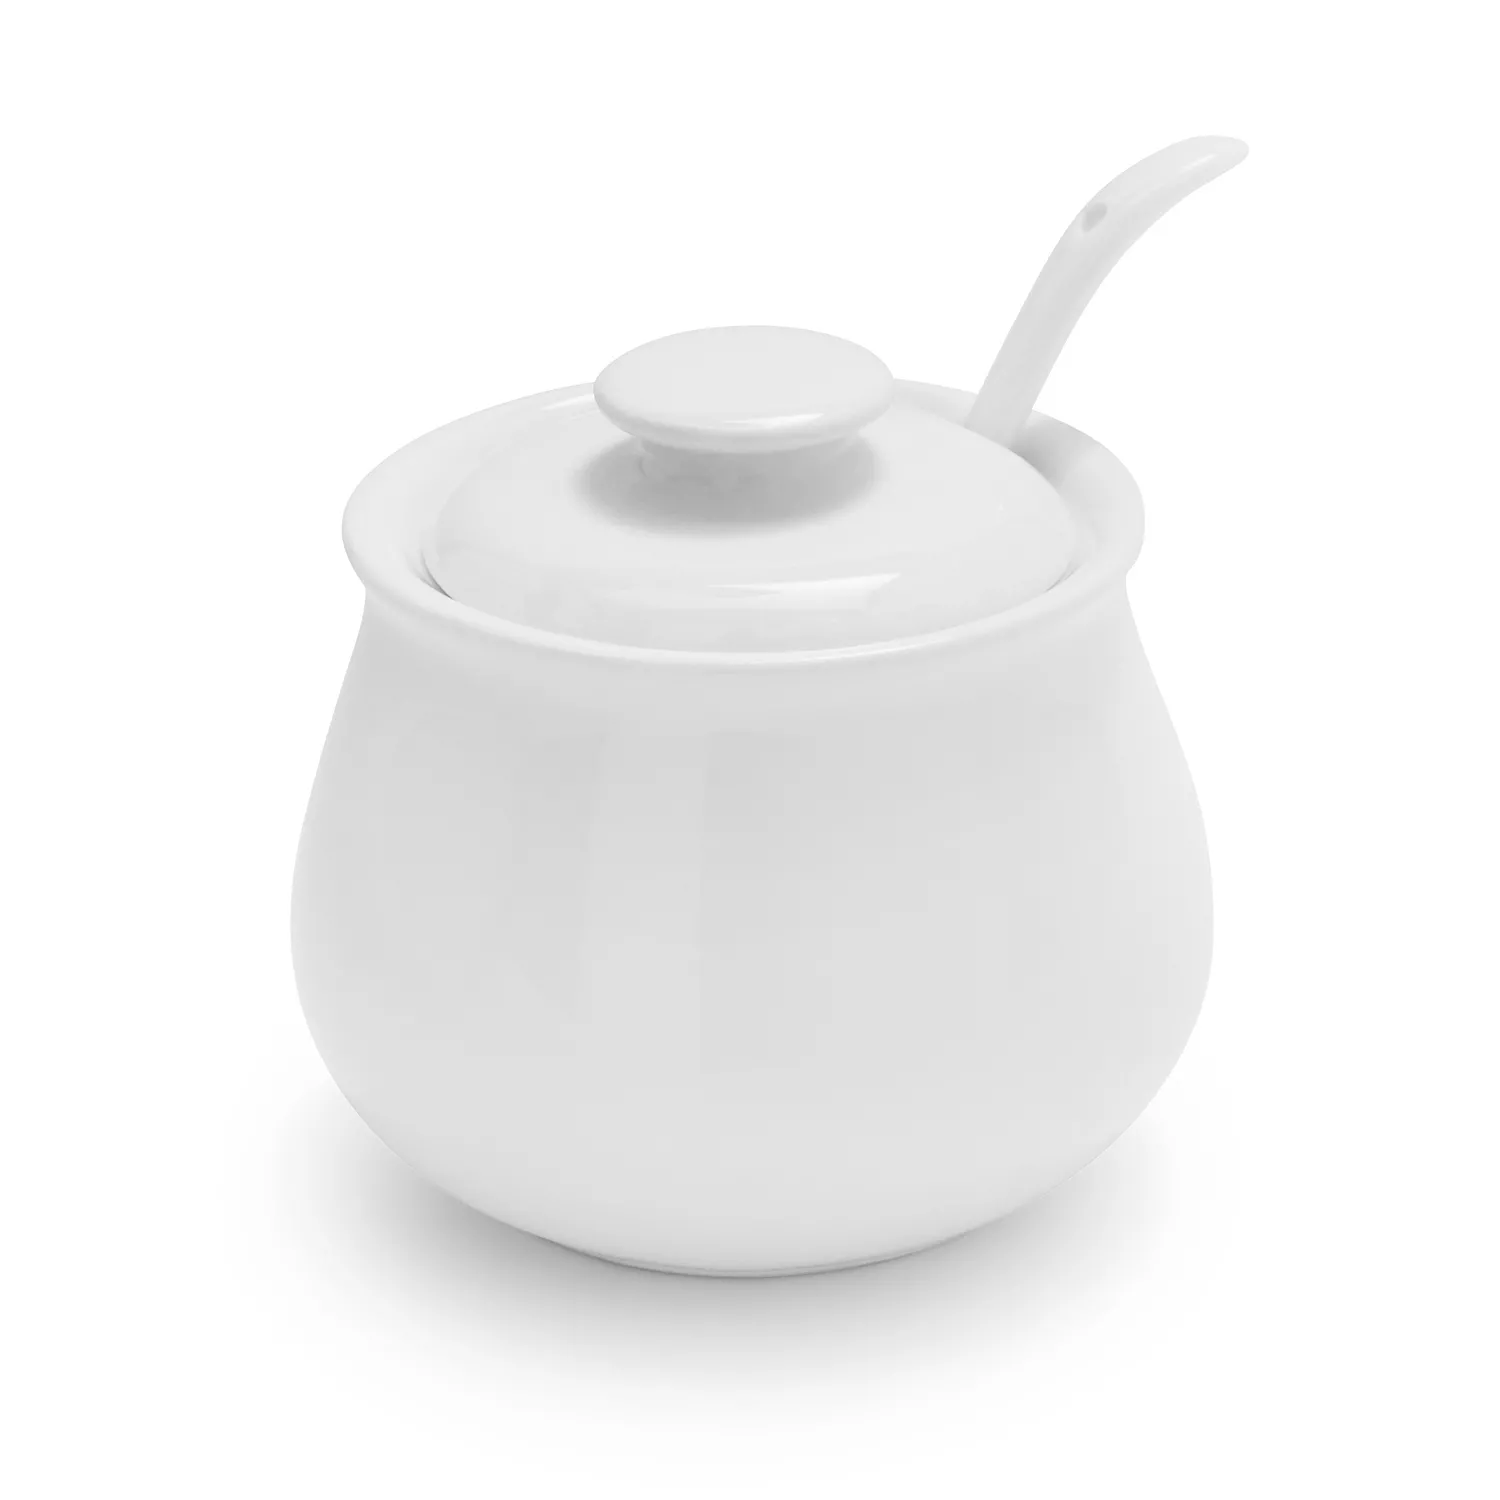 Buy Sugar with Lid and Spoon,Set of 3 Ceramic Food Storage Jar